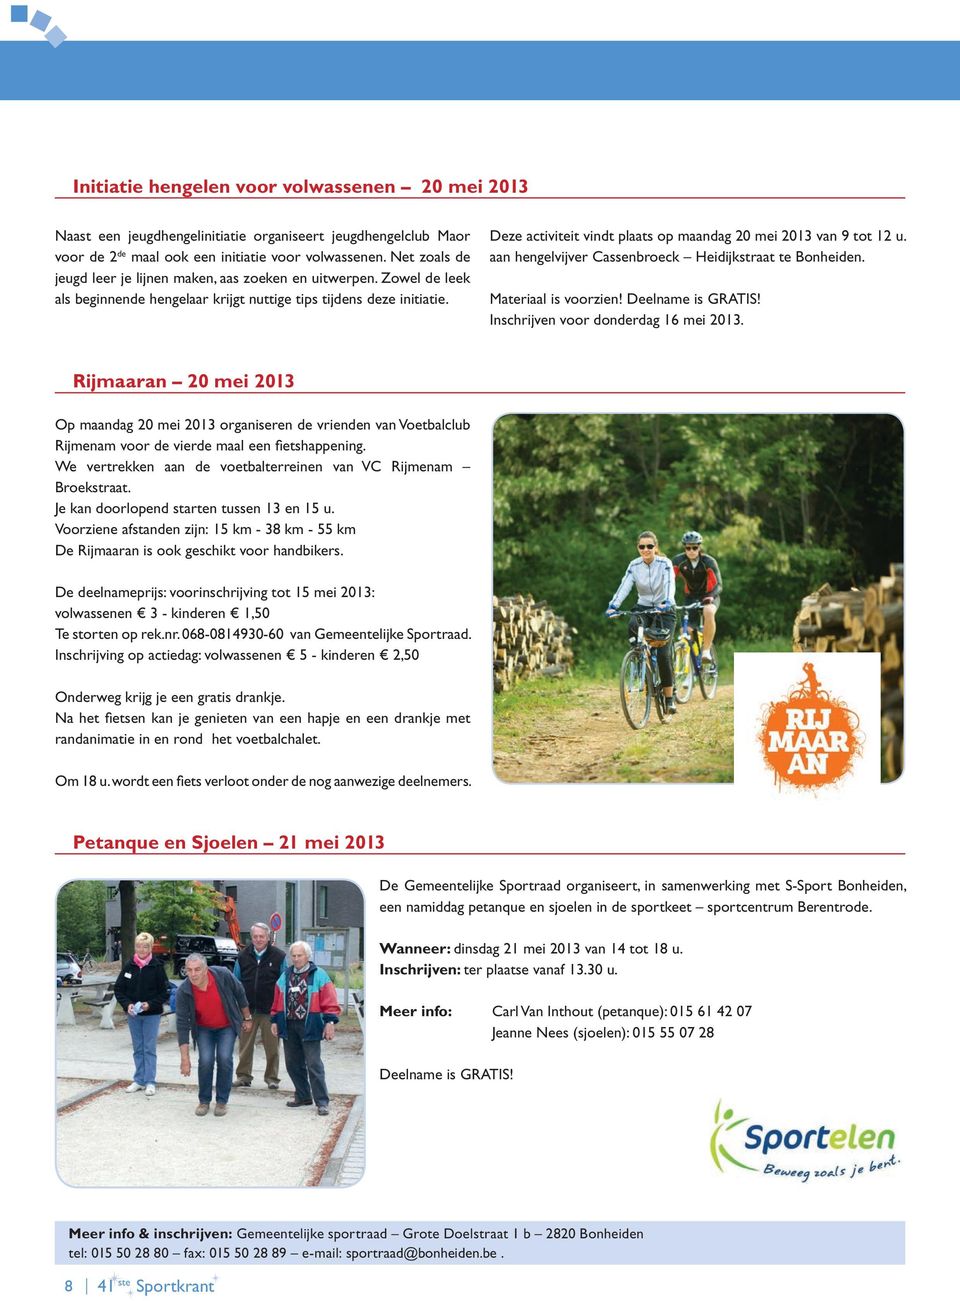 Deze activiteit vindt plaats op maandag 20 mei 2013 van 9 tot 12 u. aan hengelvijver Cassenbroeck Heidijkstraat te Bonheiden. Materiaal is voorzien! Inschrijven voor donderdag 16 mei 2013.